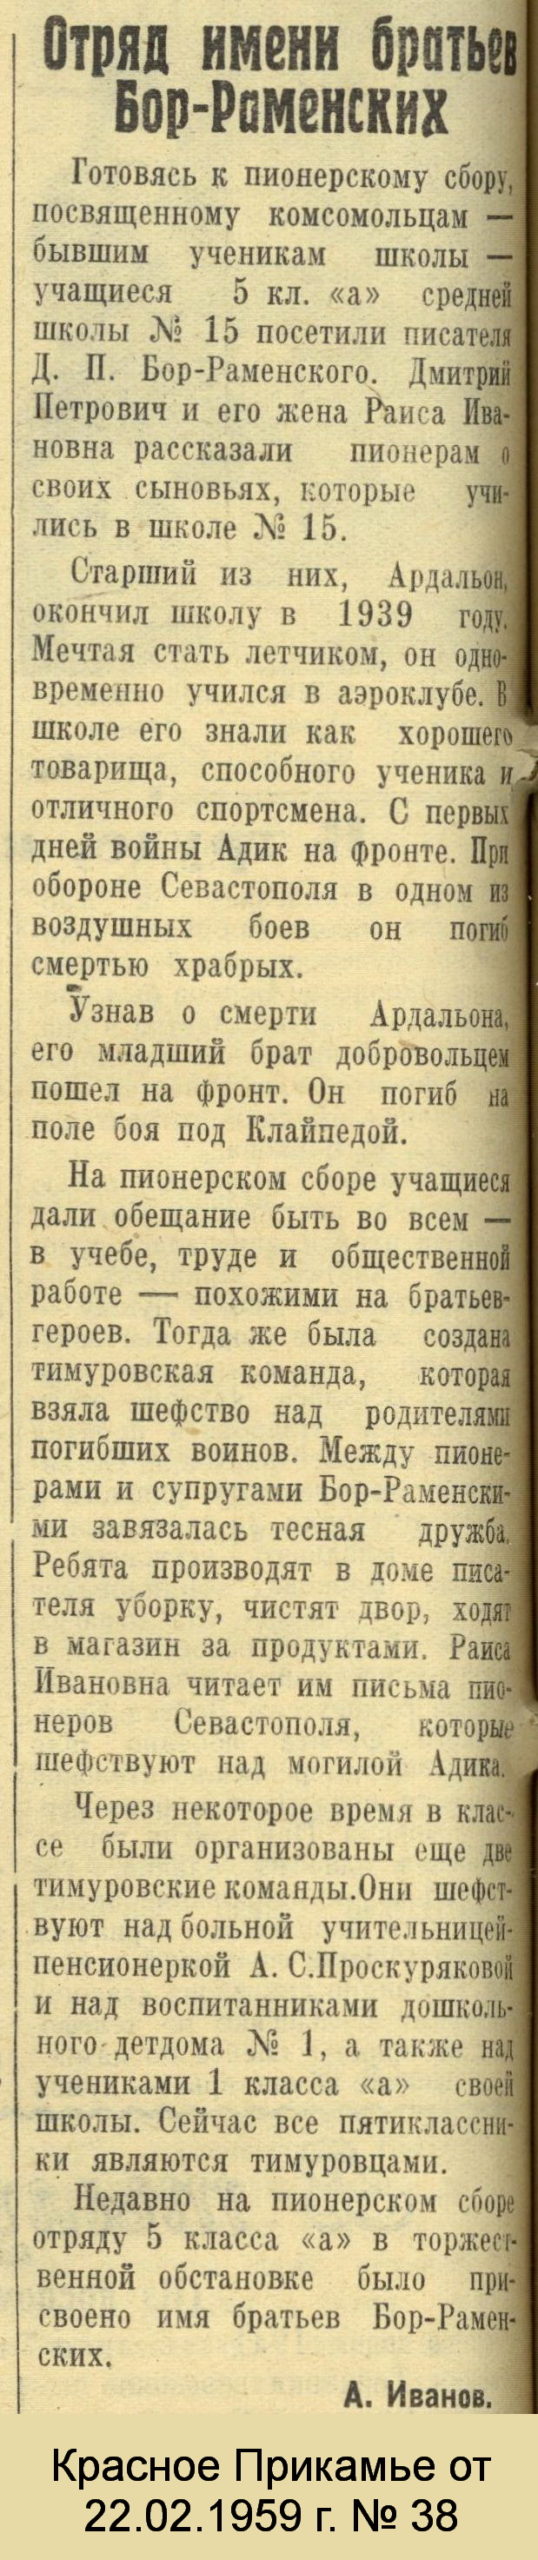 Красное Прикамье. - 1959. - 22 февраля.